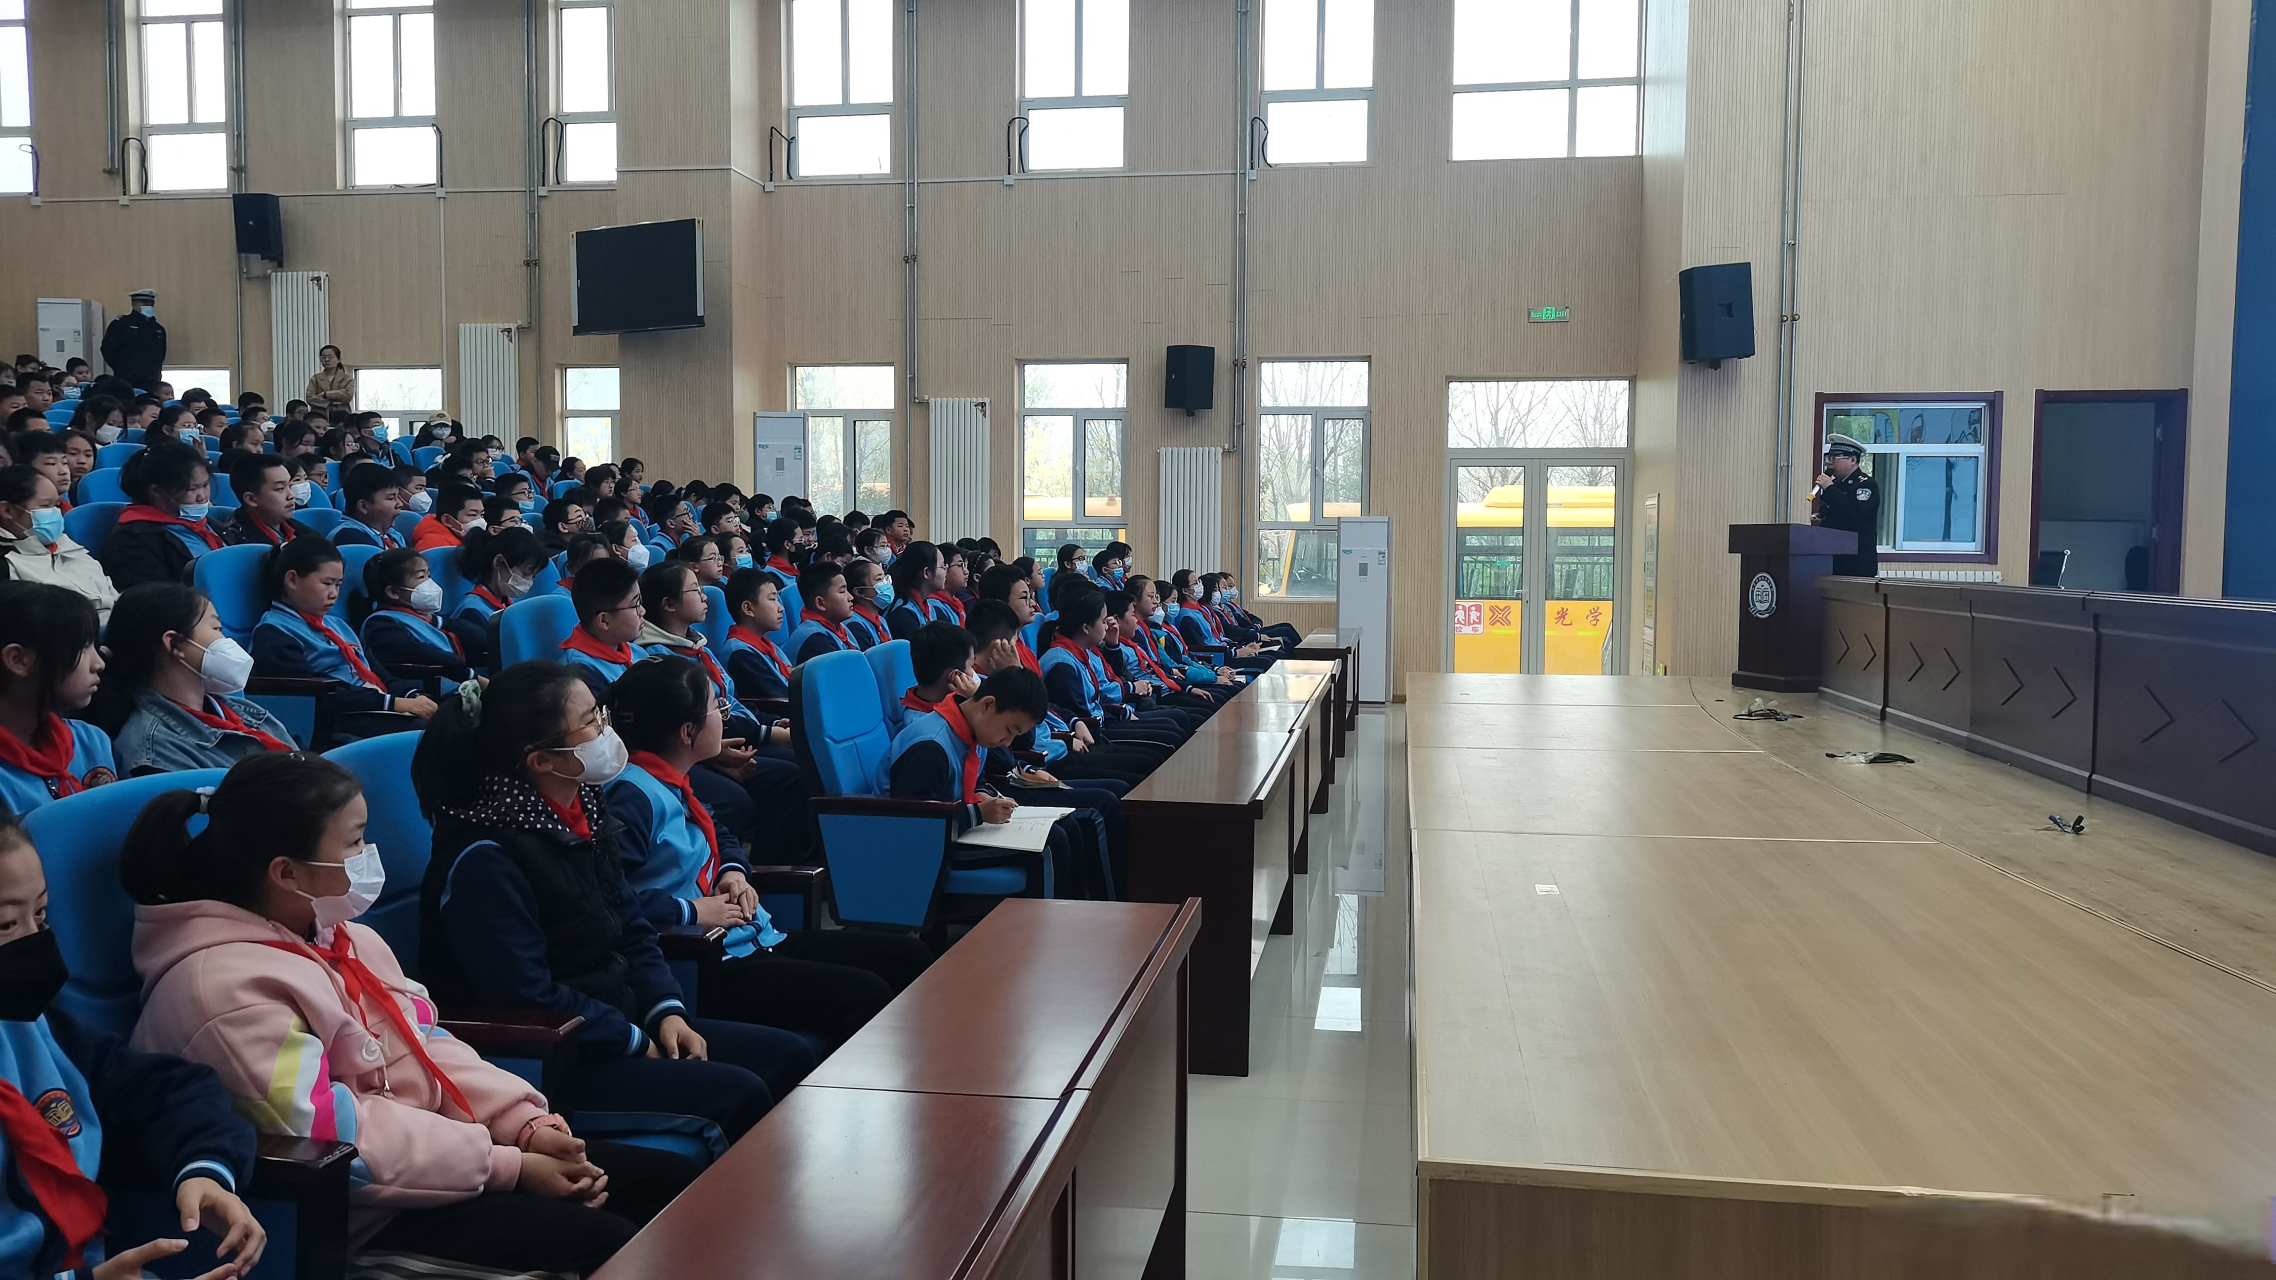 4月6日下午,寿光公安交警 到弥水未来学校为300名师生上交通安全课!